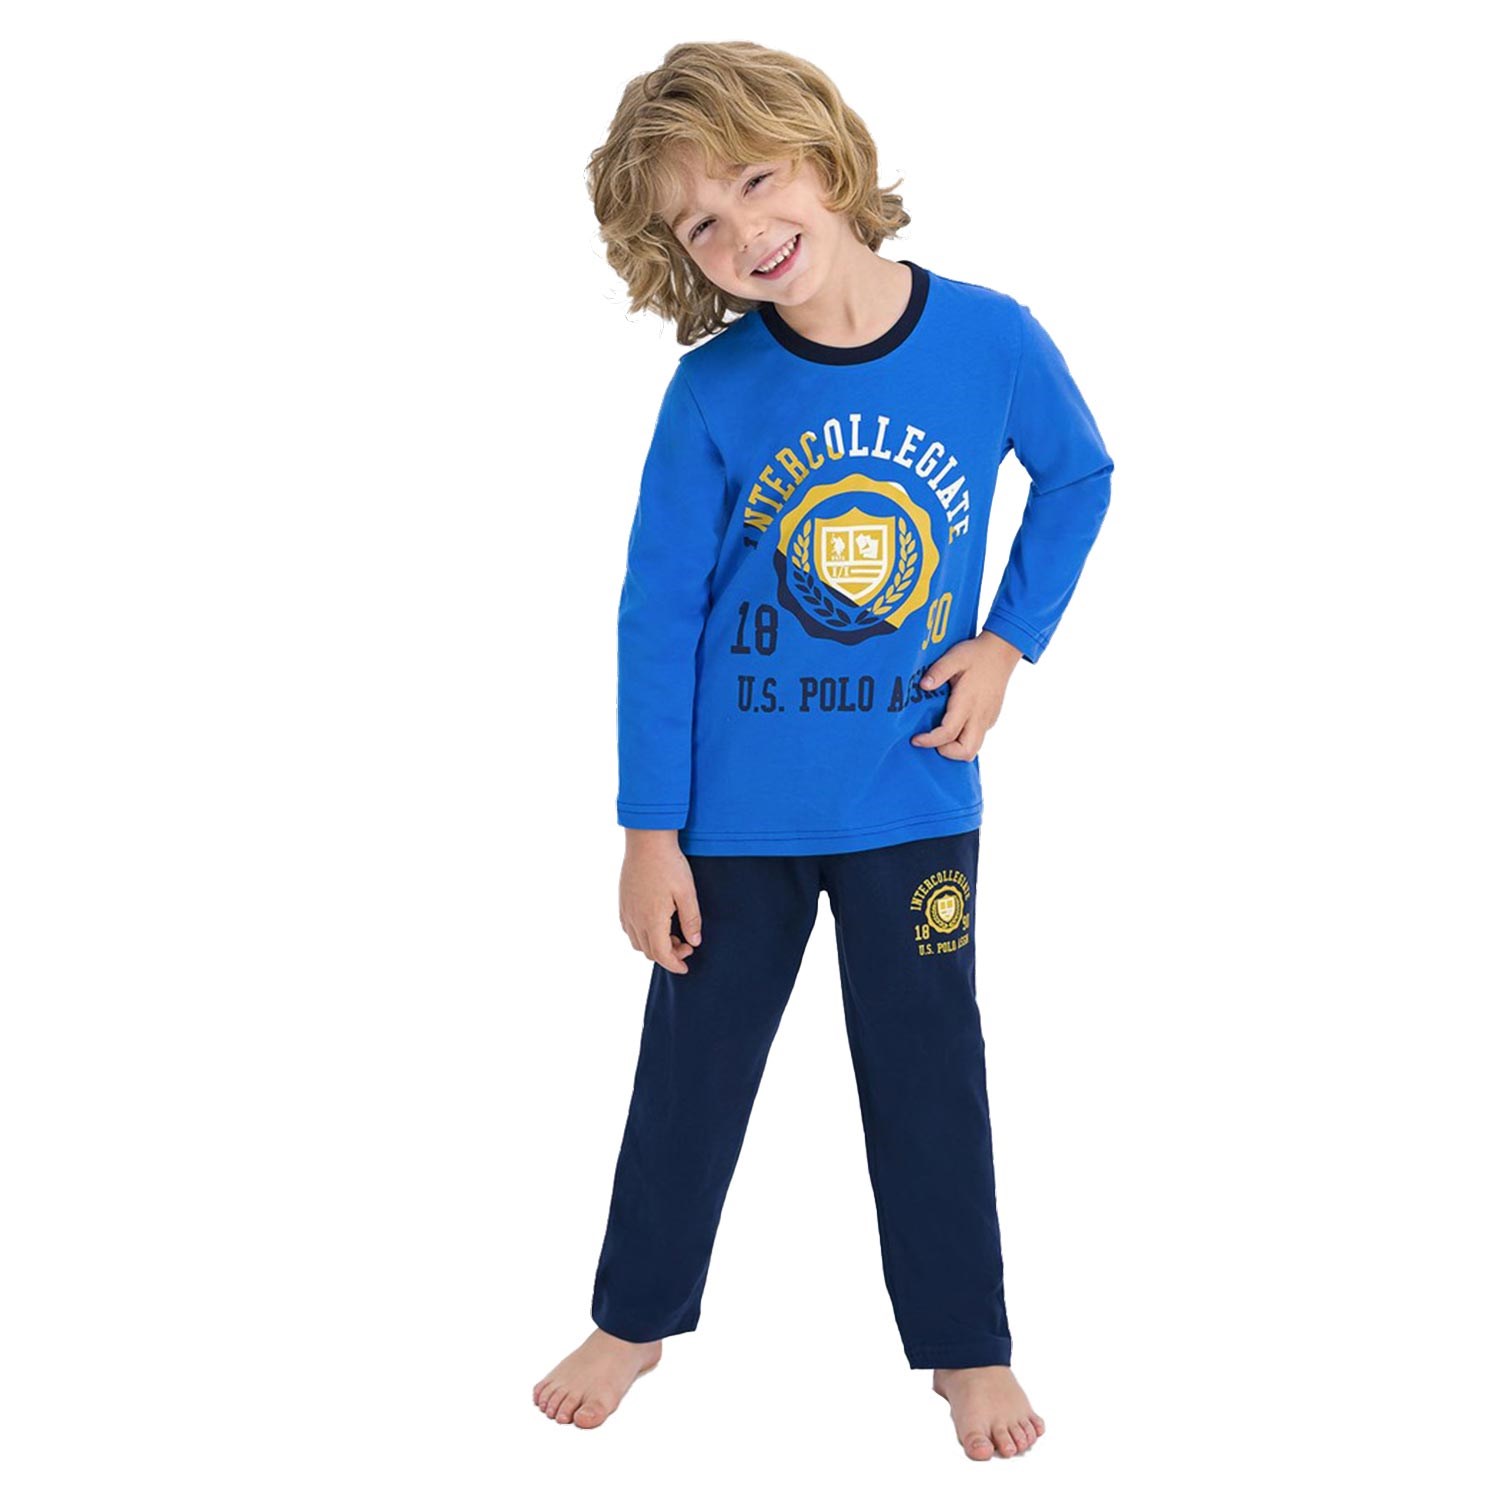 U.S Polo Uzun Kollu Çocuk Pijama Takımı Mavi